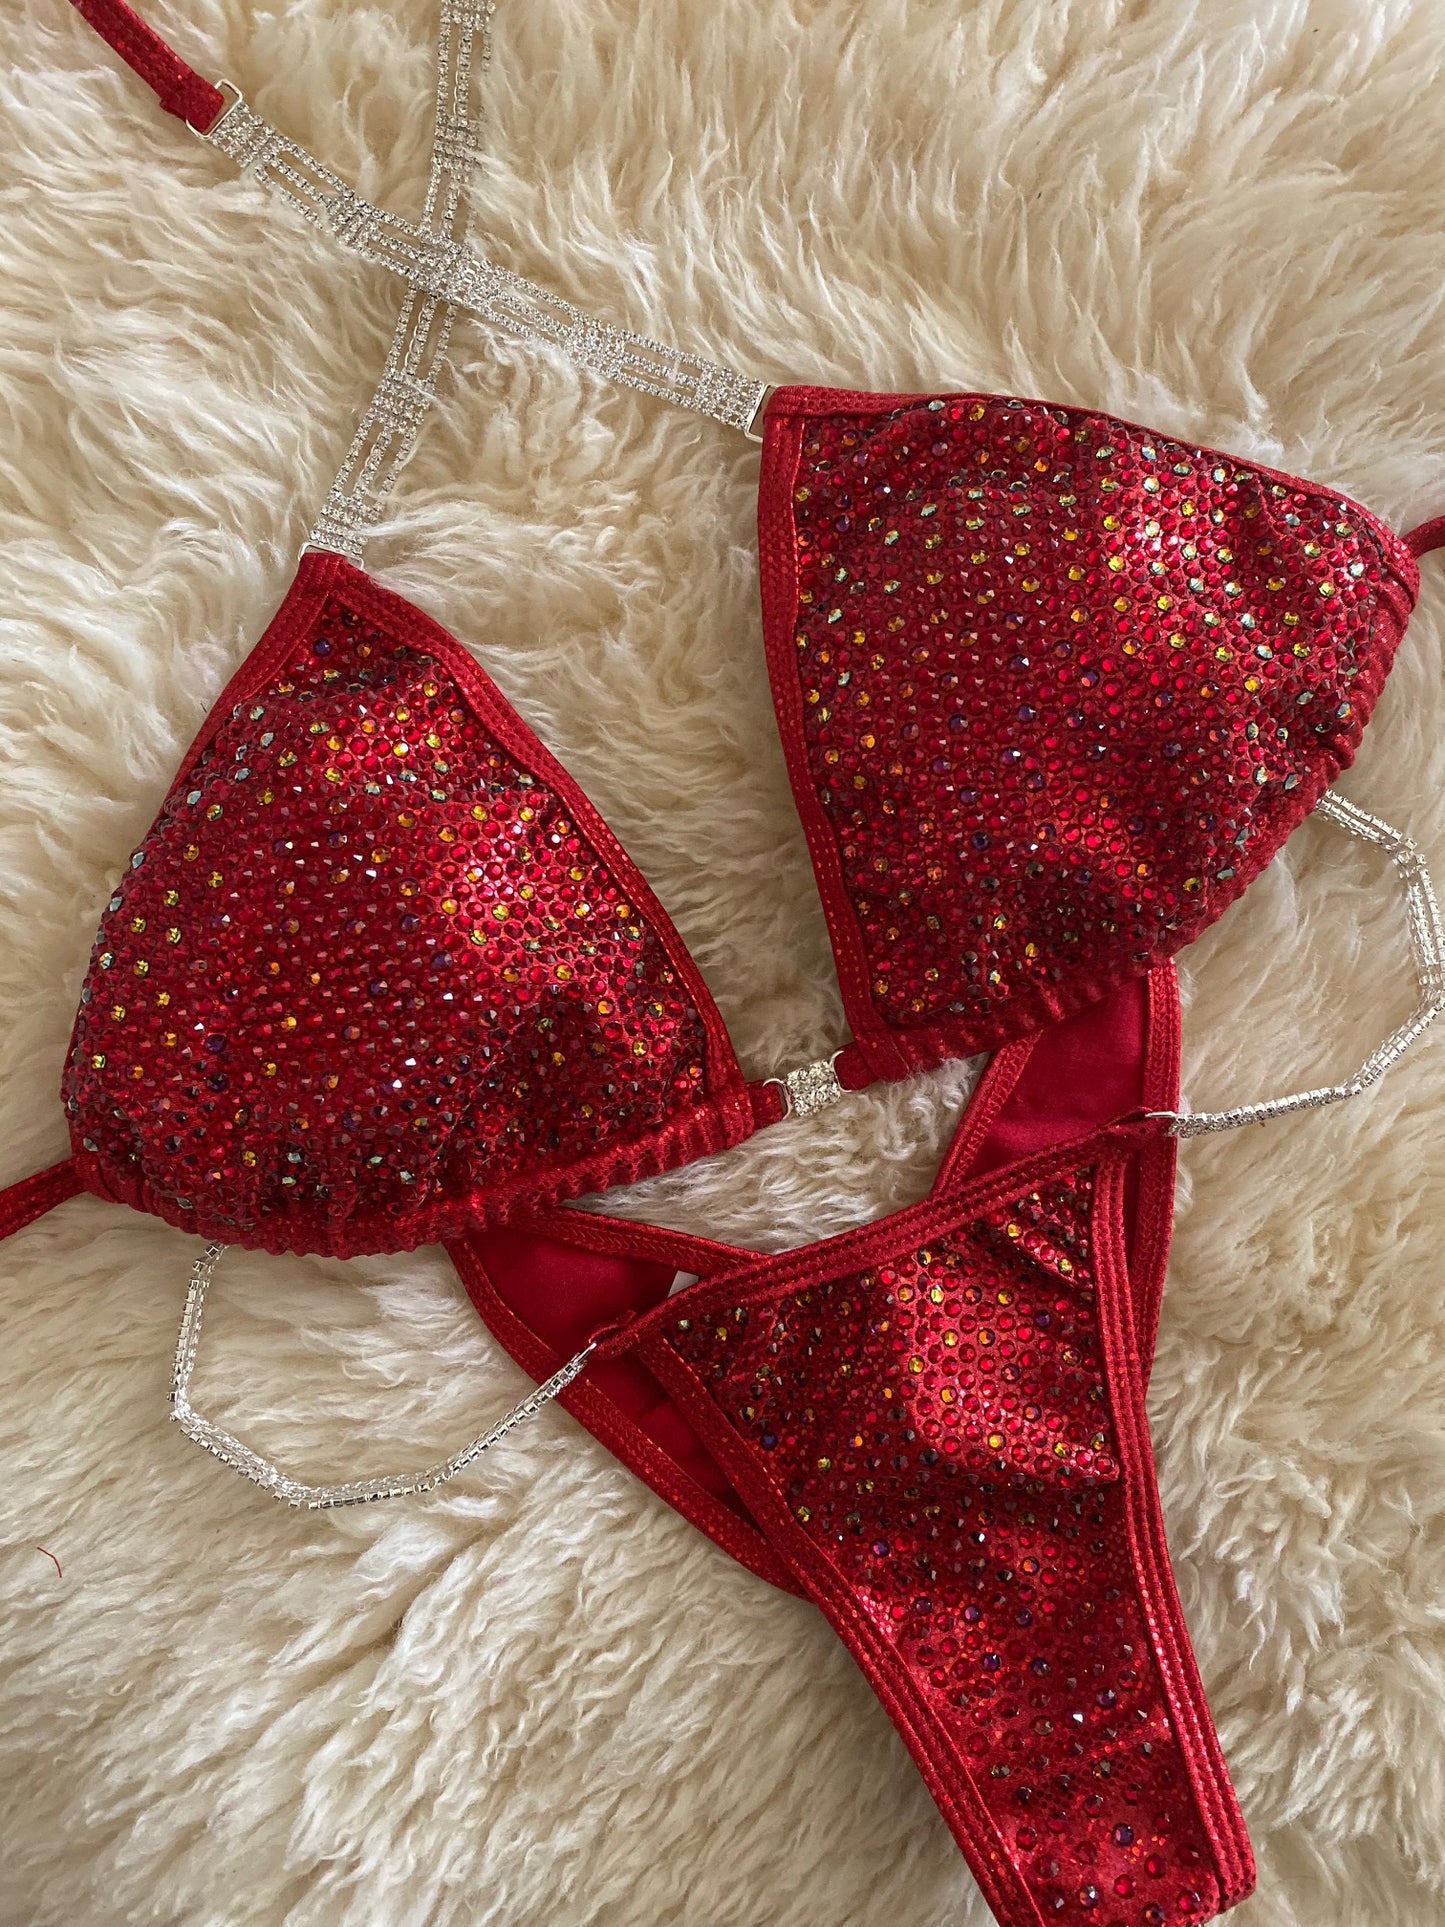 Pixel Confetti Red- Competition Bikini Division